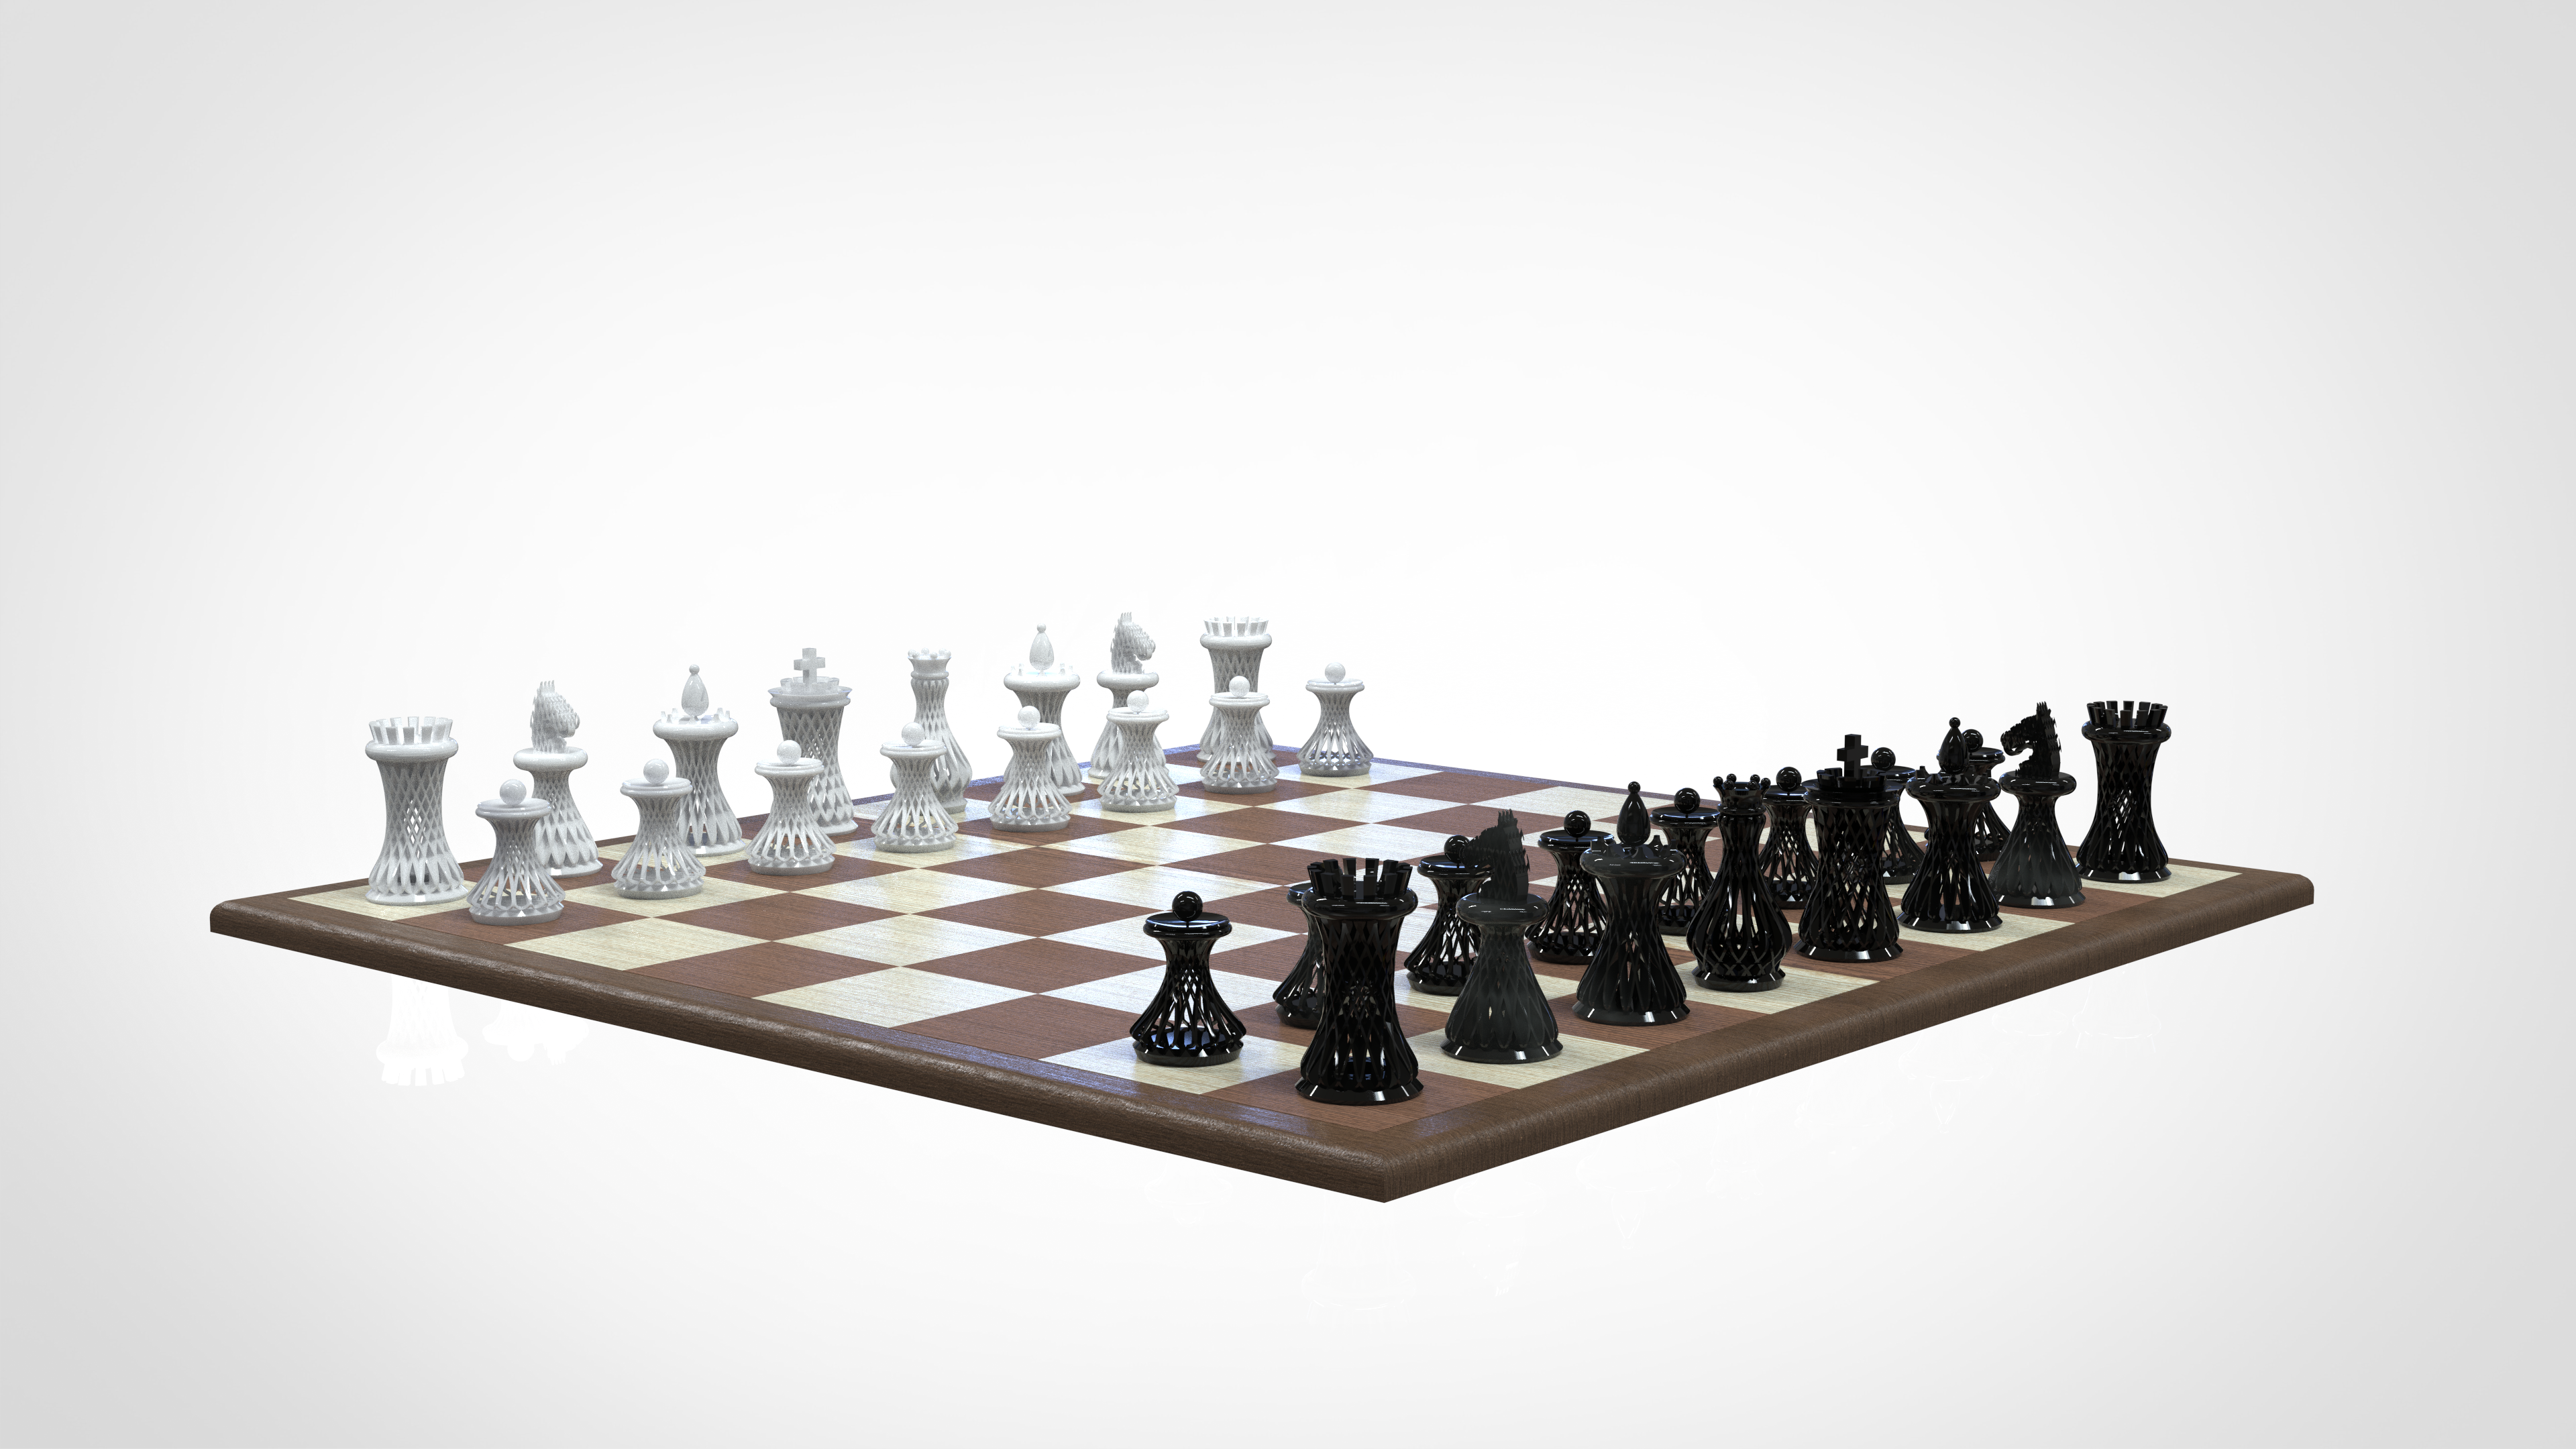 Solucionado: Desafio FUSION – peças de xadrez – Etapa 2 - Autodesk